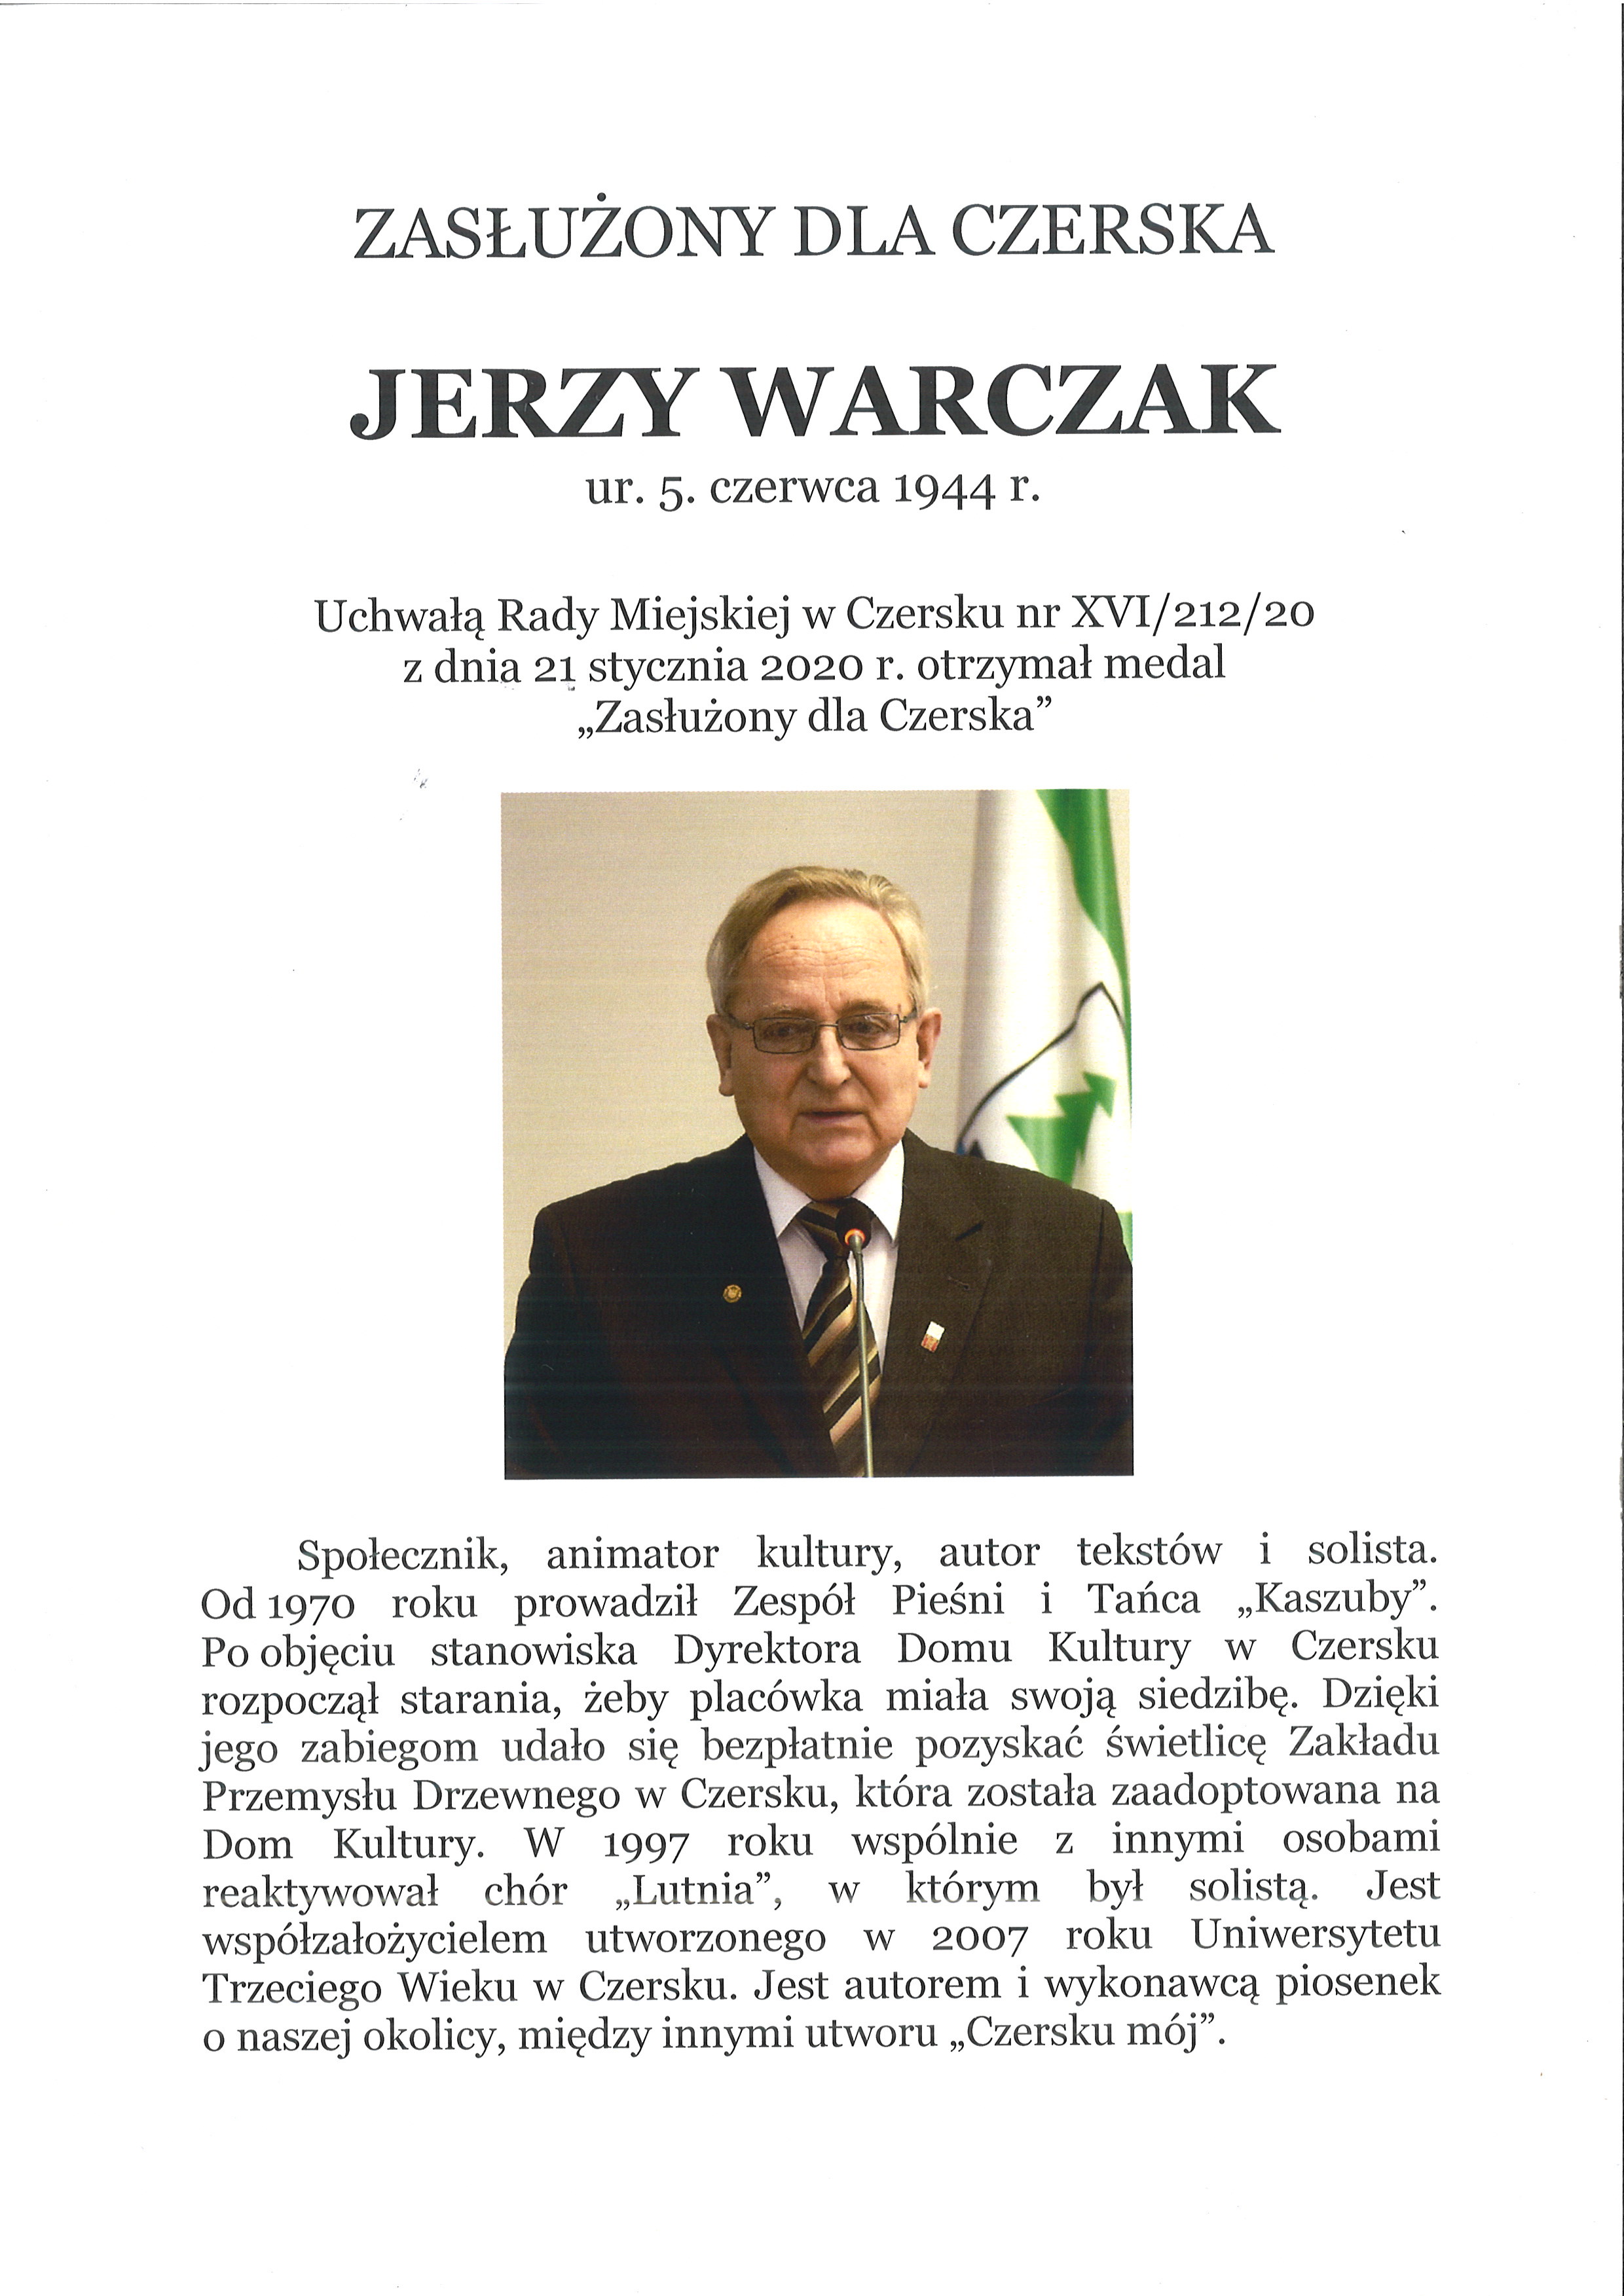 Jerzy Warczak